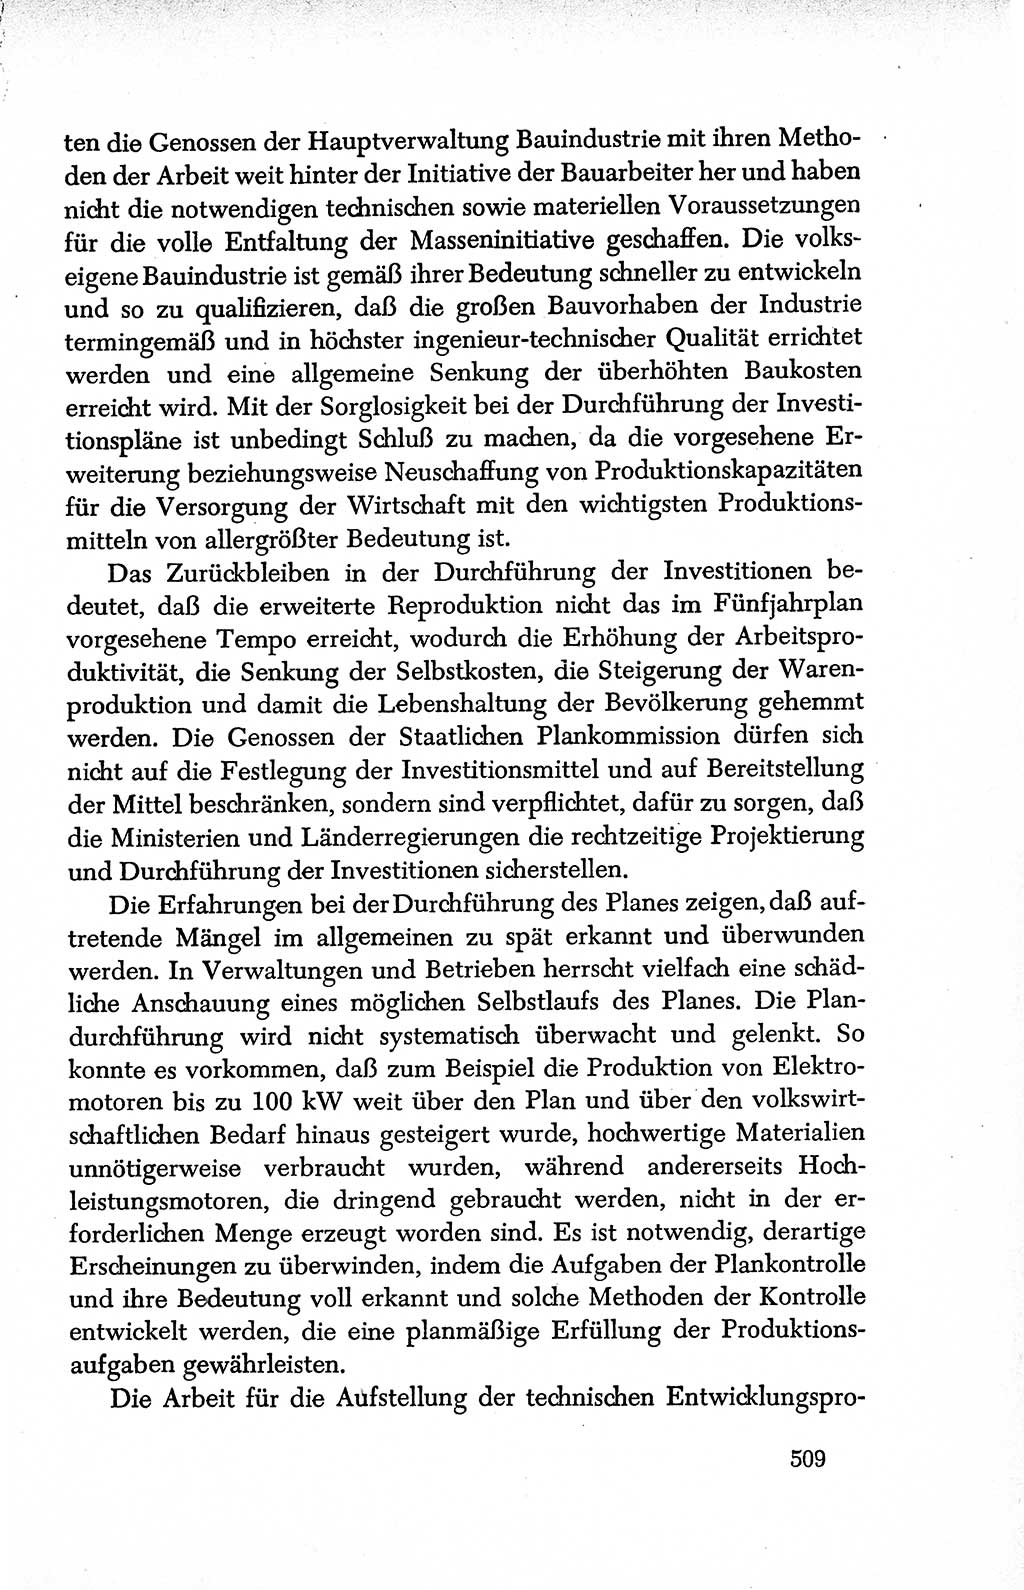 Dokumente der Sozialistischen Einheitspartei Deutschlands (SED) [Deutsche Demokratische Republik (DDR)] 1950-1952, Seite 509 (Dok. SED DDR 1950-1952, S. 509)